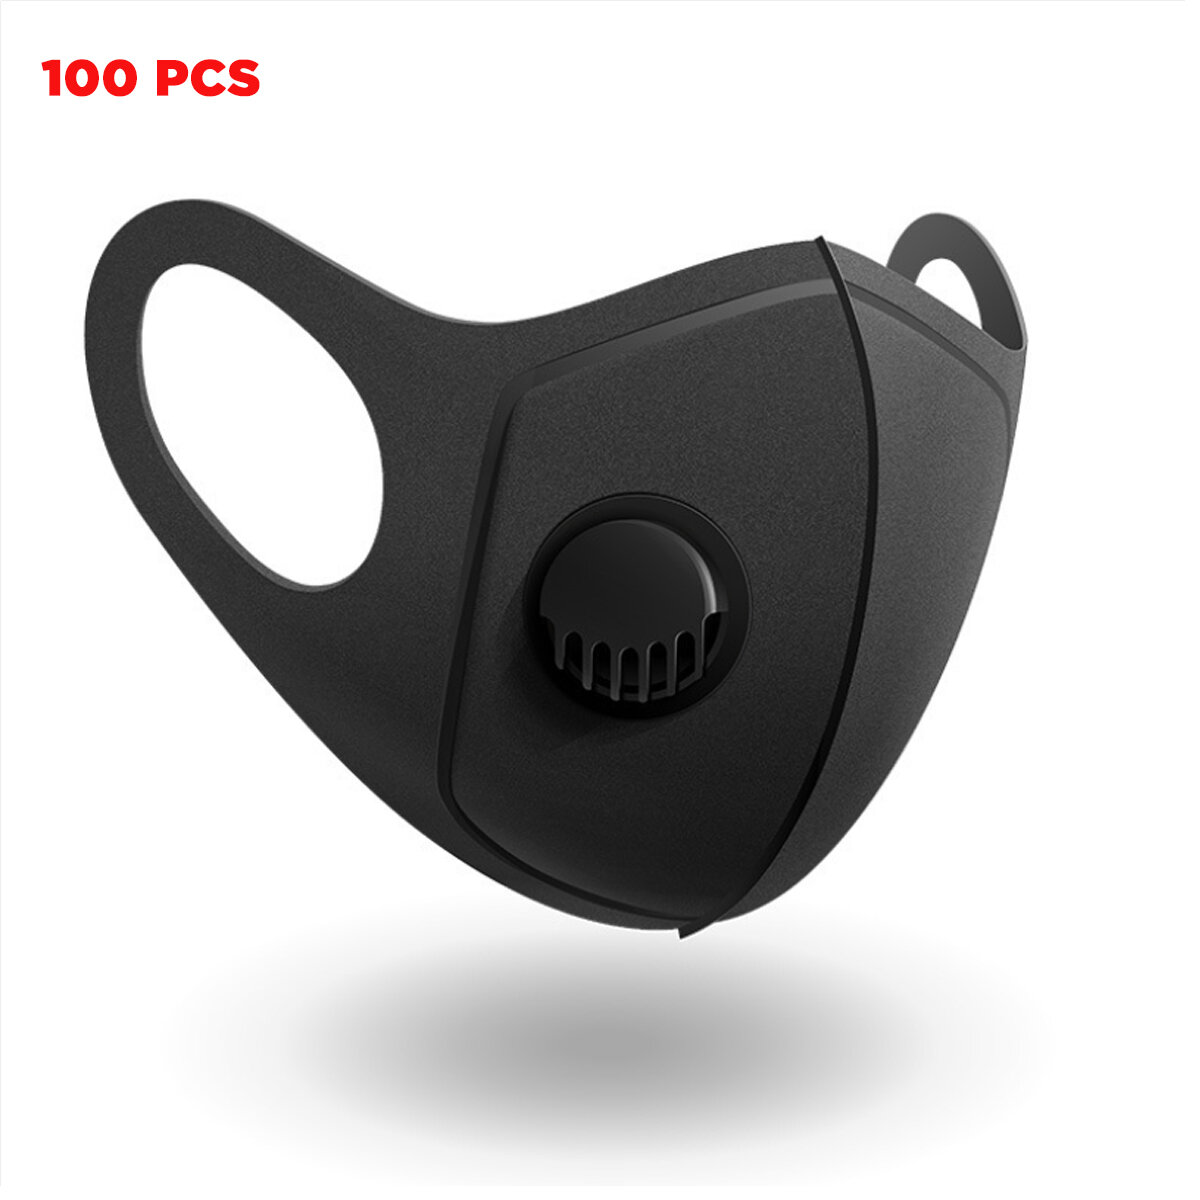 00 шт. масок для лица PM2.5 для кемпинга, путешествий, велосипедных прогулок с трехслойным фильтром, дышащие, защищают от пыли ротовую маску